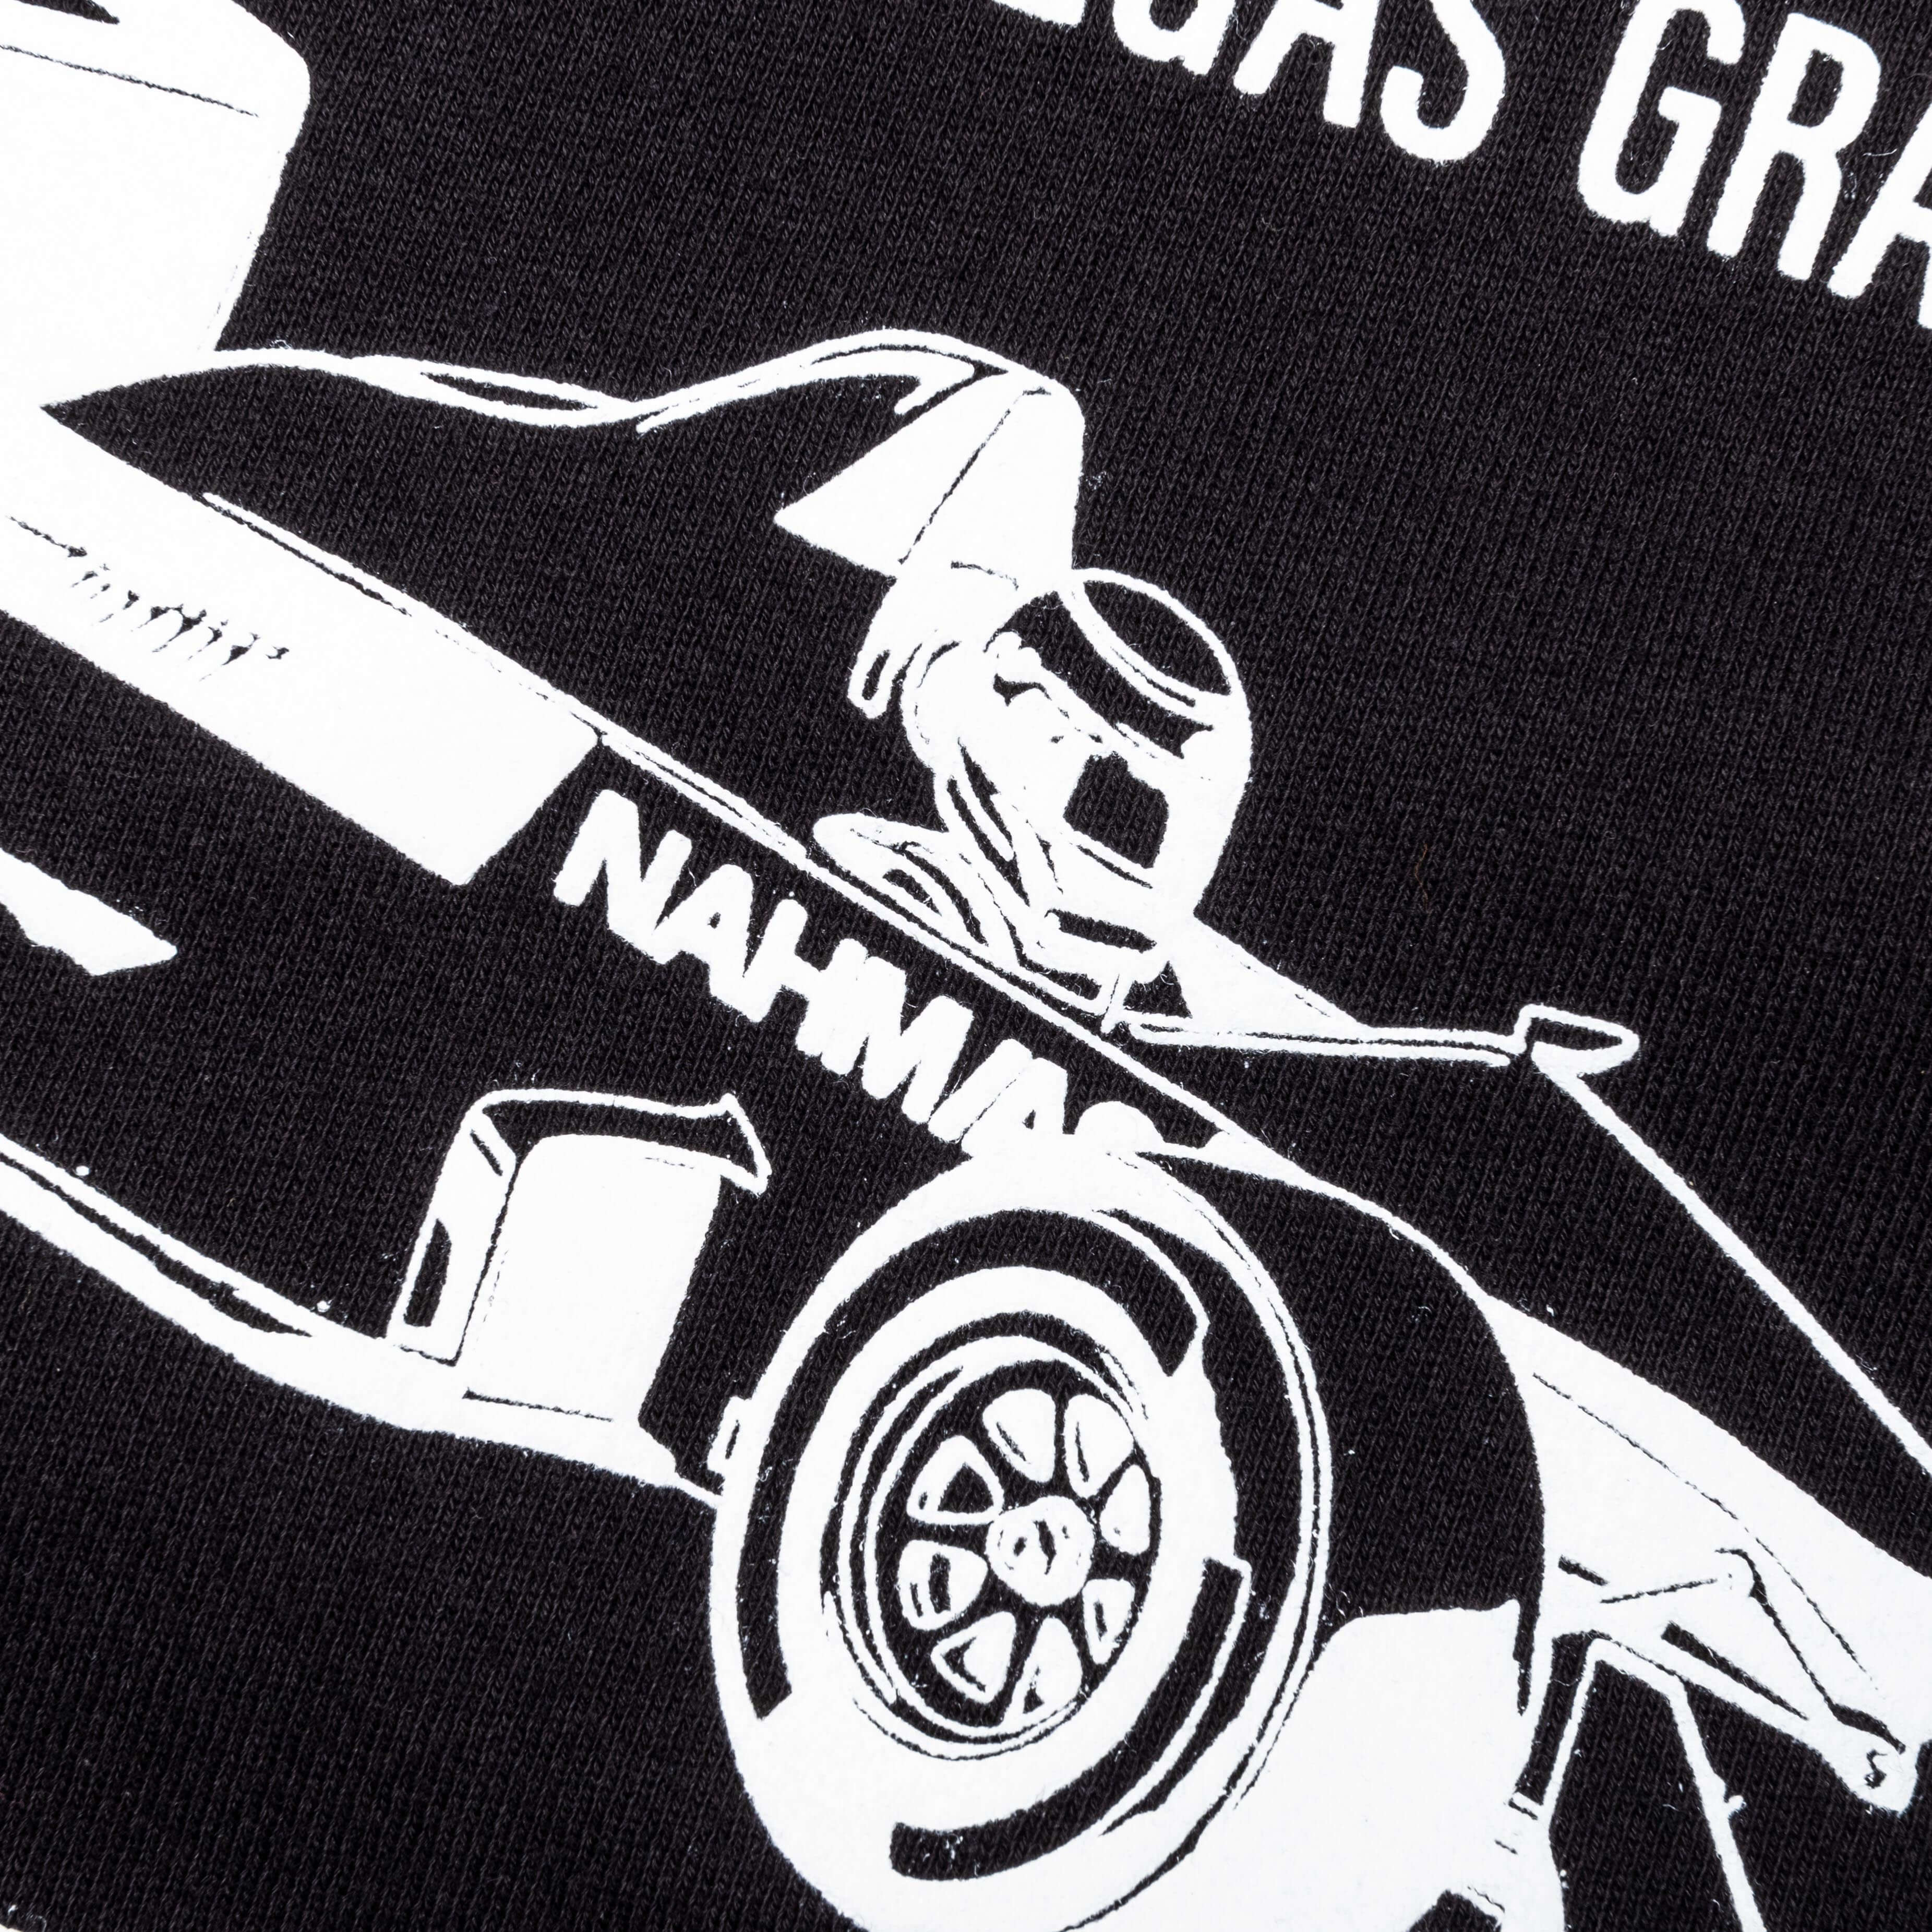 Feature x Nahmias F1 Racecar Hoodie - Black, , large image number null